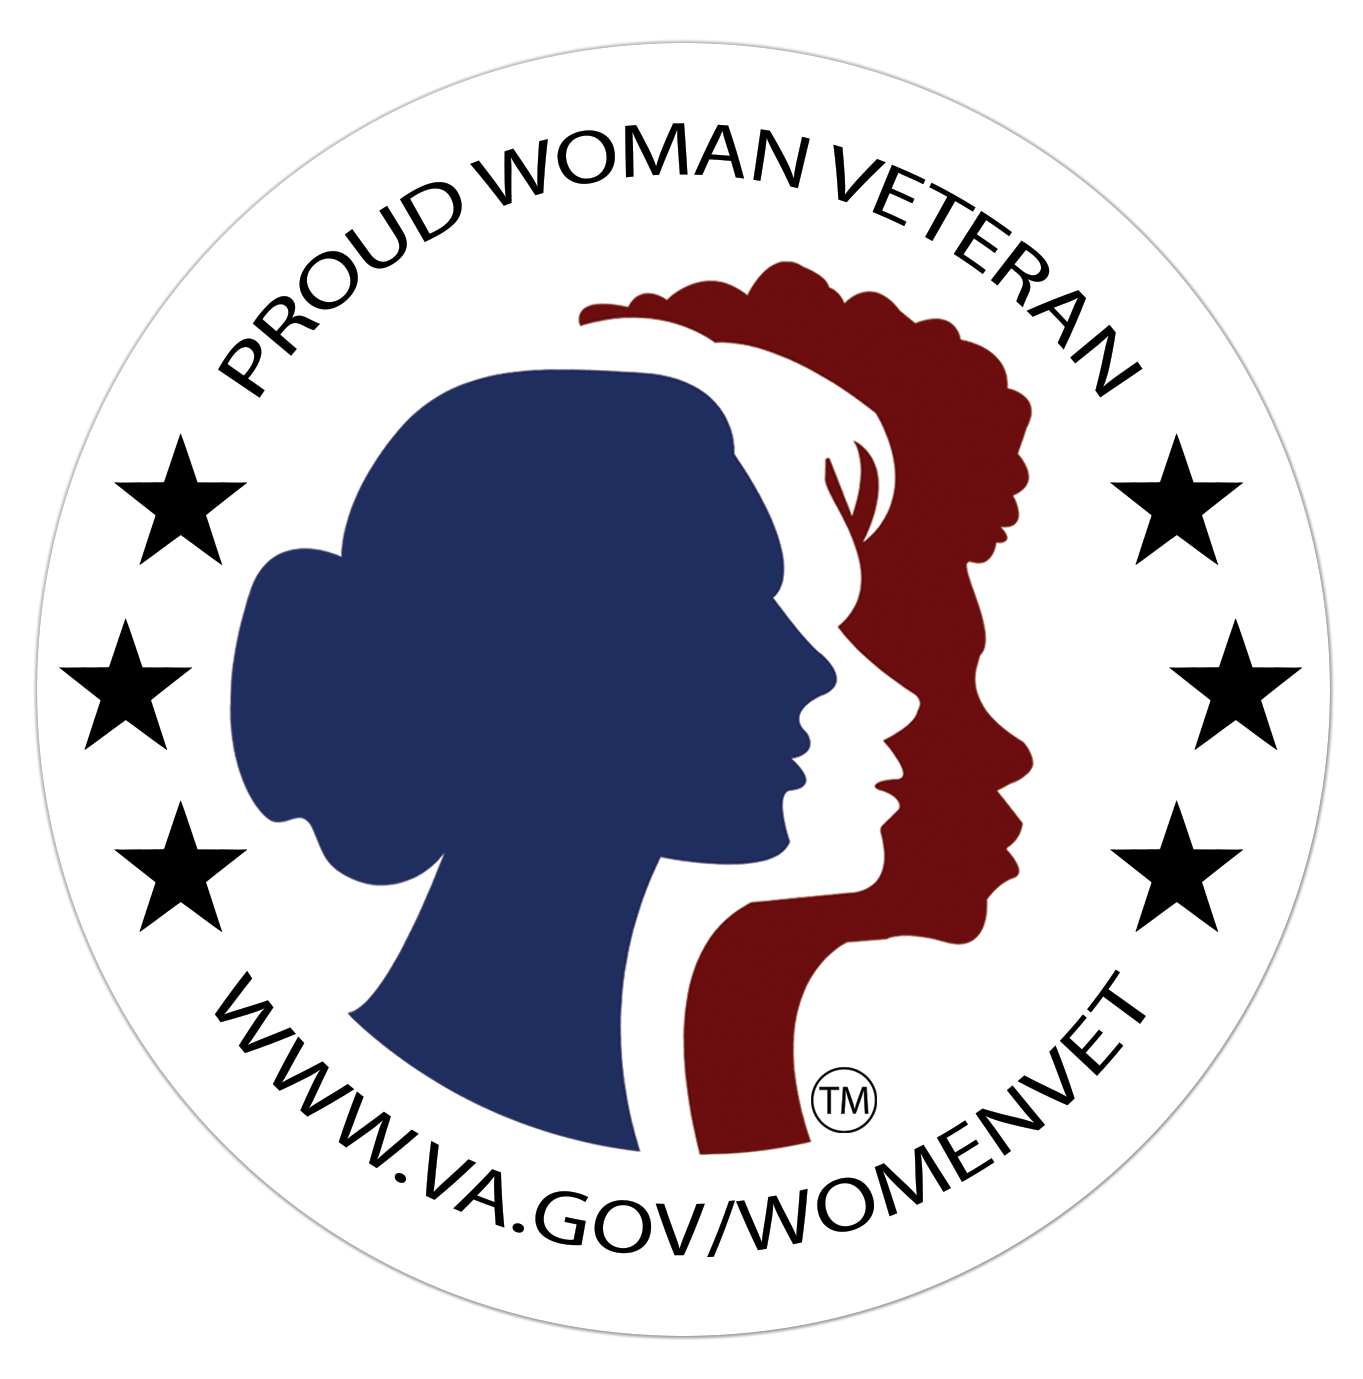 VA Center for Women Veterans Medallion of Strength